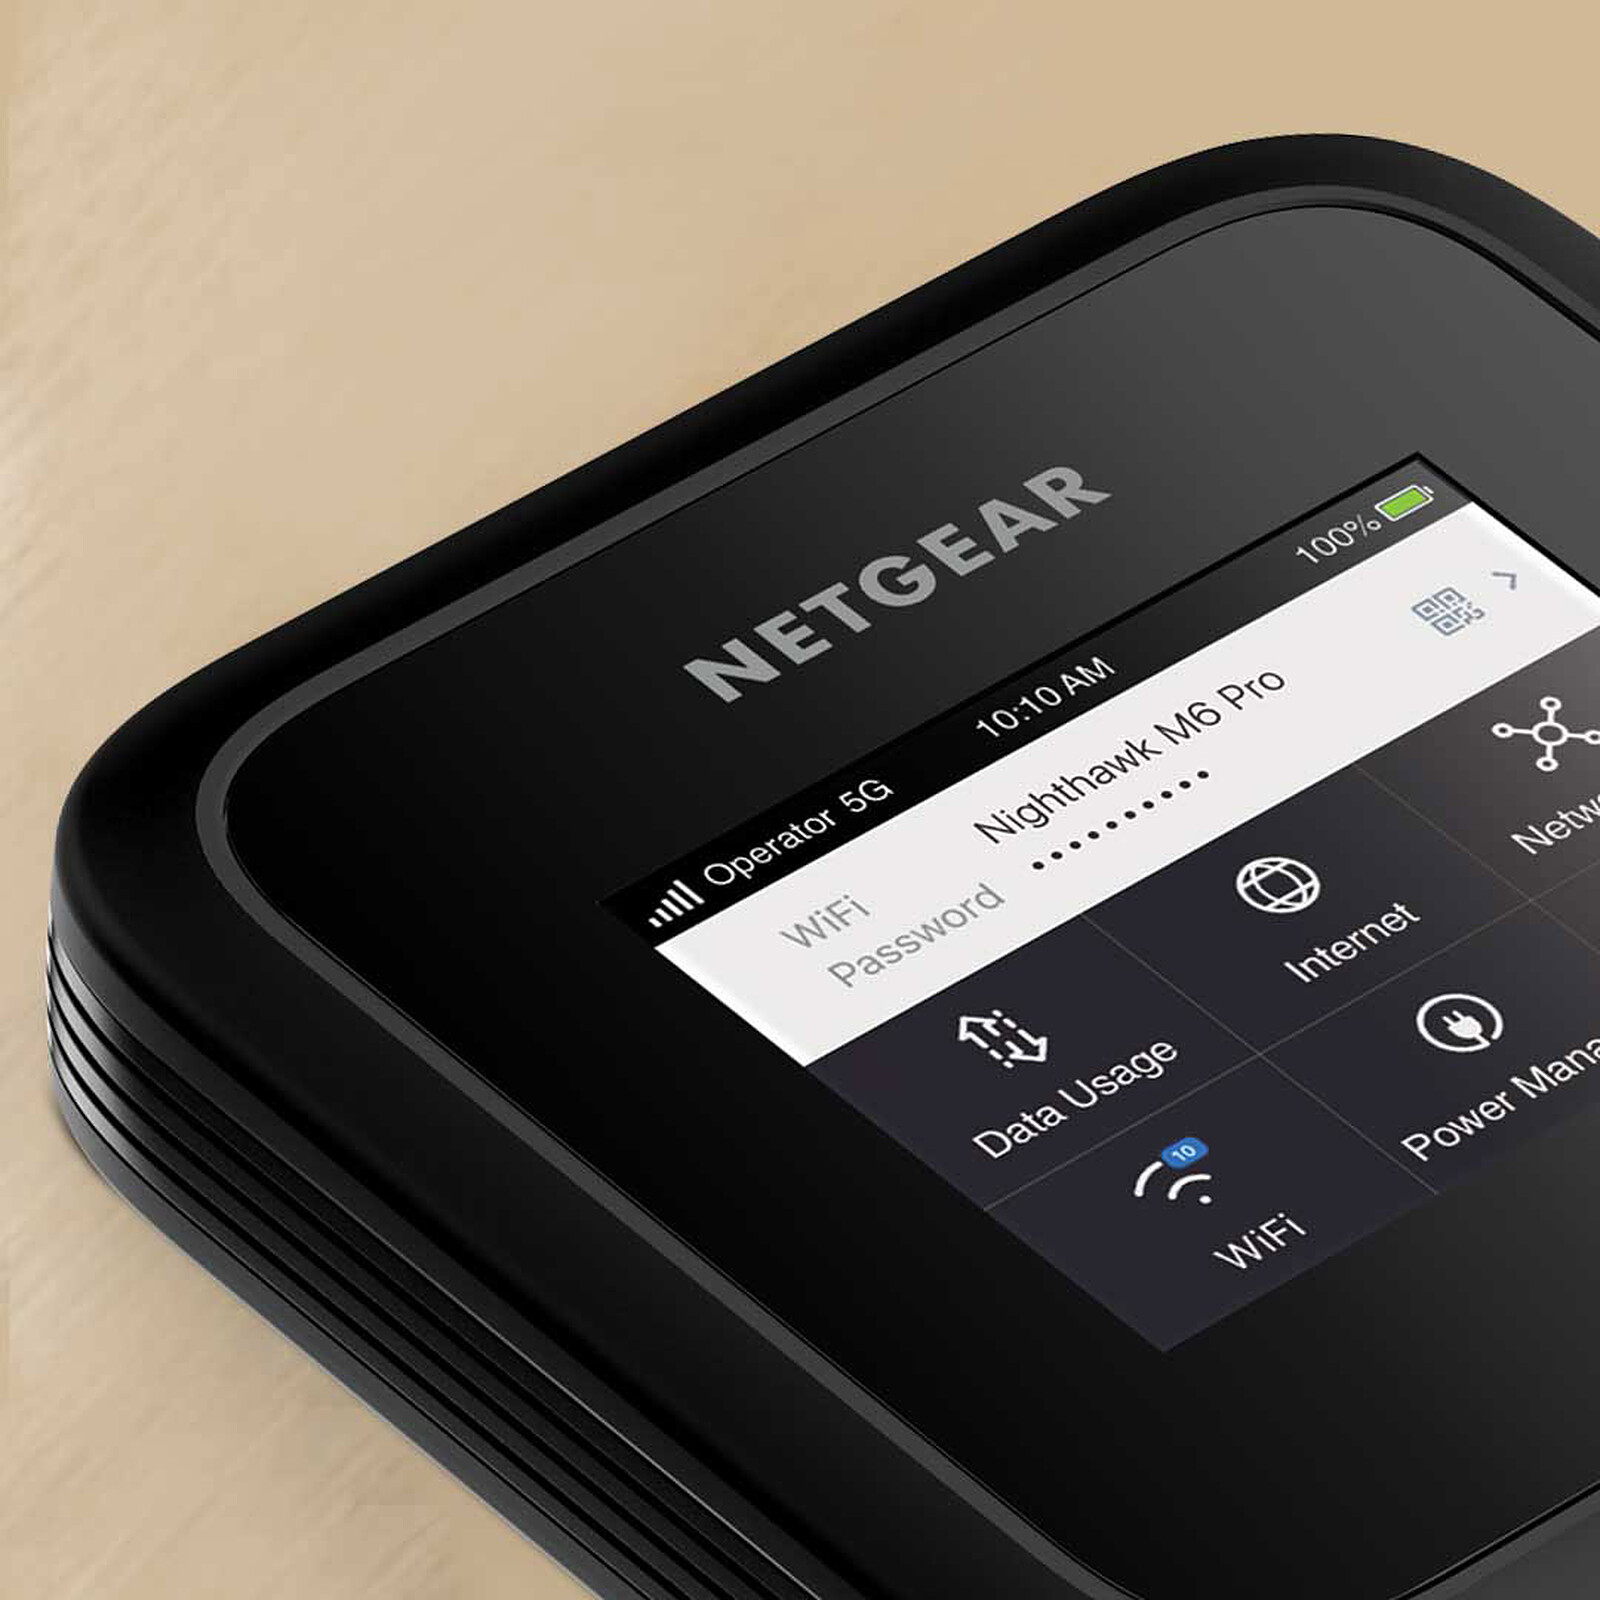 NETGEAR Routeur 5G SIM WiFi 6E (MR6450) – routeur Mobile 5G WiFi  Ultra-Rapide, 6 Gbit/s et Jusqu'à 32 appareils | Livré avec Une Batterie